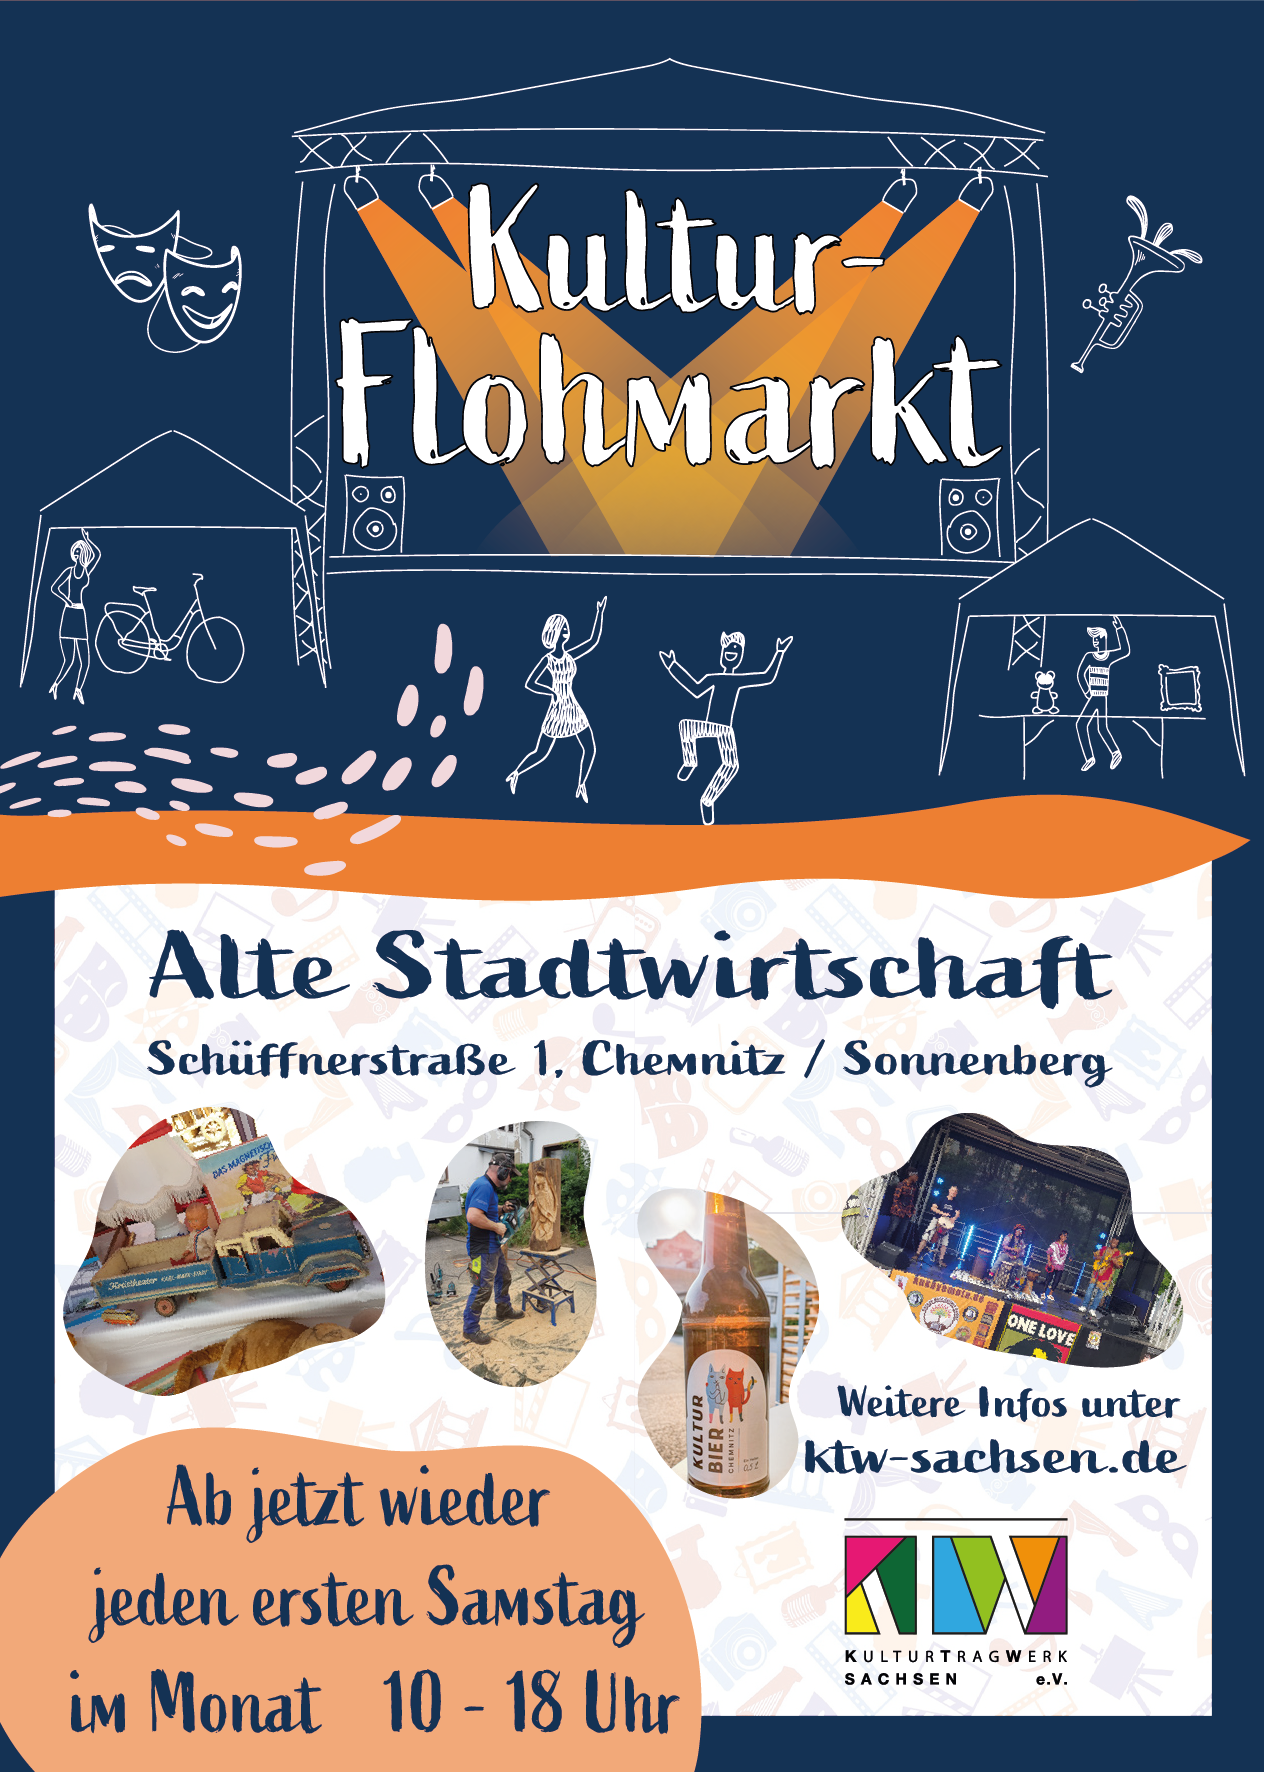 Flyer_Kultur-Flohmarkt mit Angaben zu Ort, Alte Stadtwirtschaft, Schüffnerstraße 1 in 09130 Chemnitz, und Zeit, 01.01.2023, 10 bis 18 Uhr, der Veranstaltung